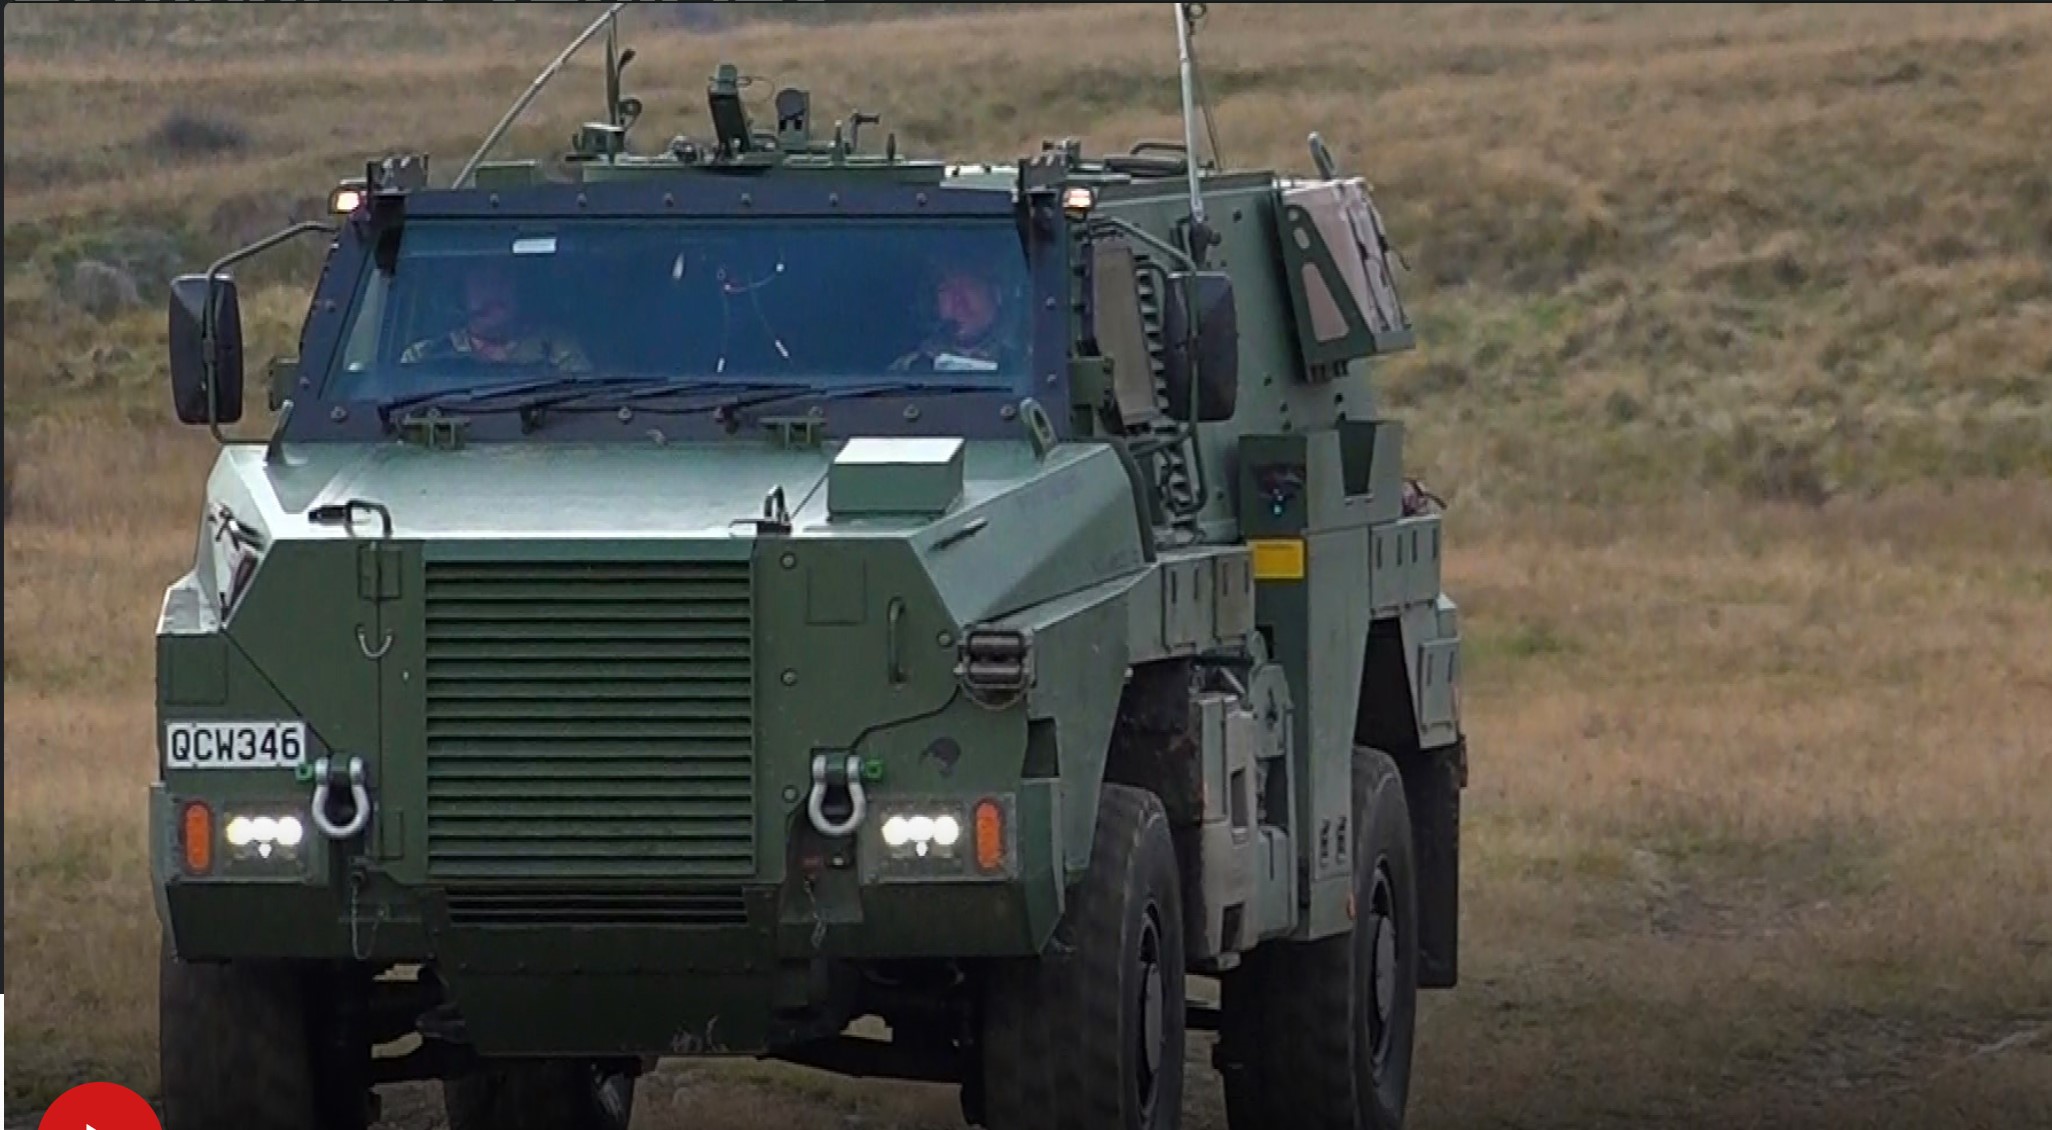 Đội xe mới với các tính năng chống bom tiên tiến, đưa công nghệ của quân đội New Zealand ngang hàng với các nước trên thế giới.